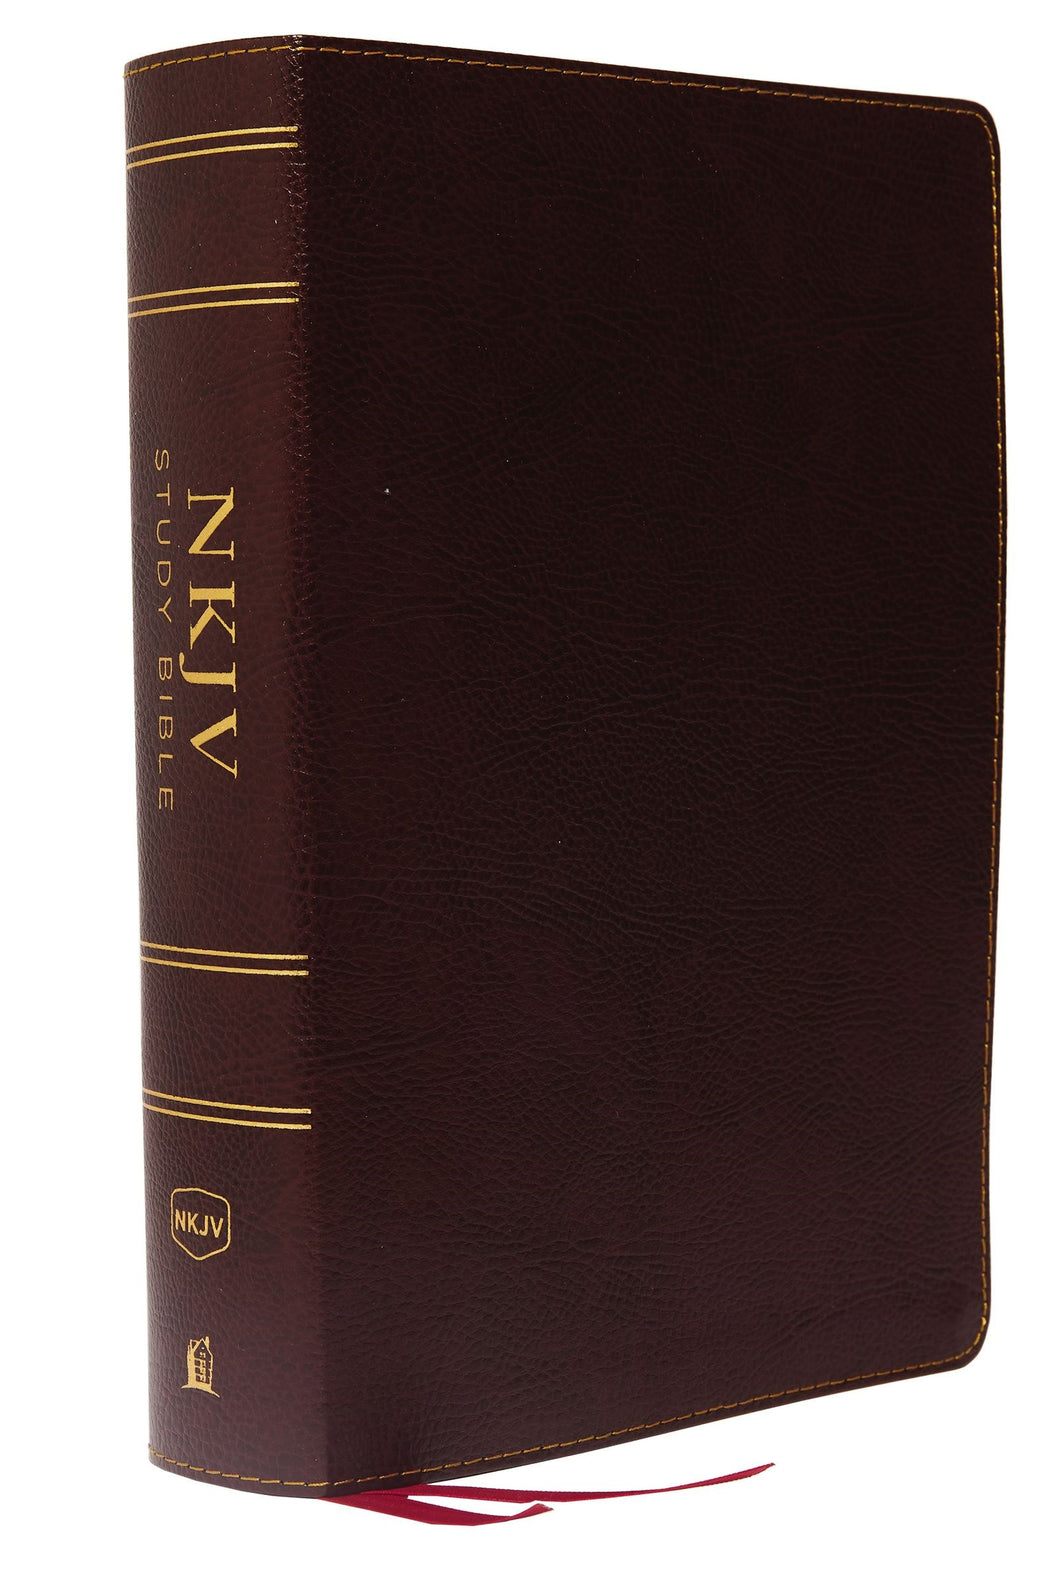 NKJV Study Bible (Full-Color) (Comfort Print)-Burgundy Bonded Leather